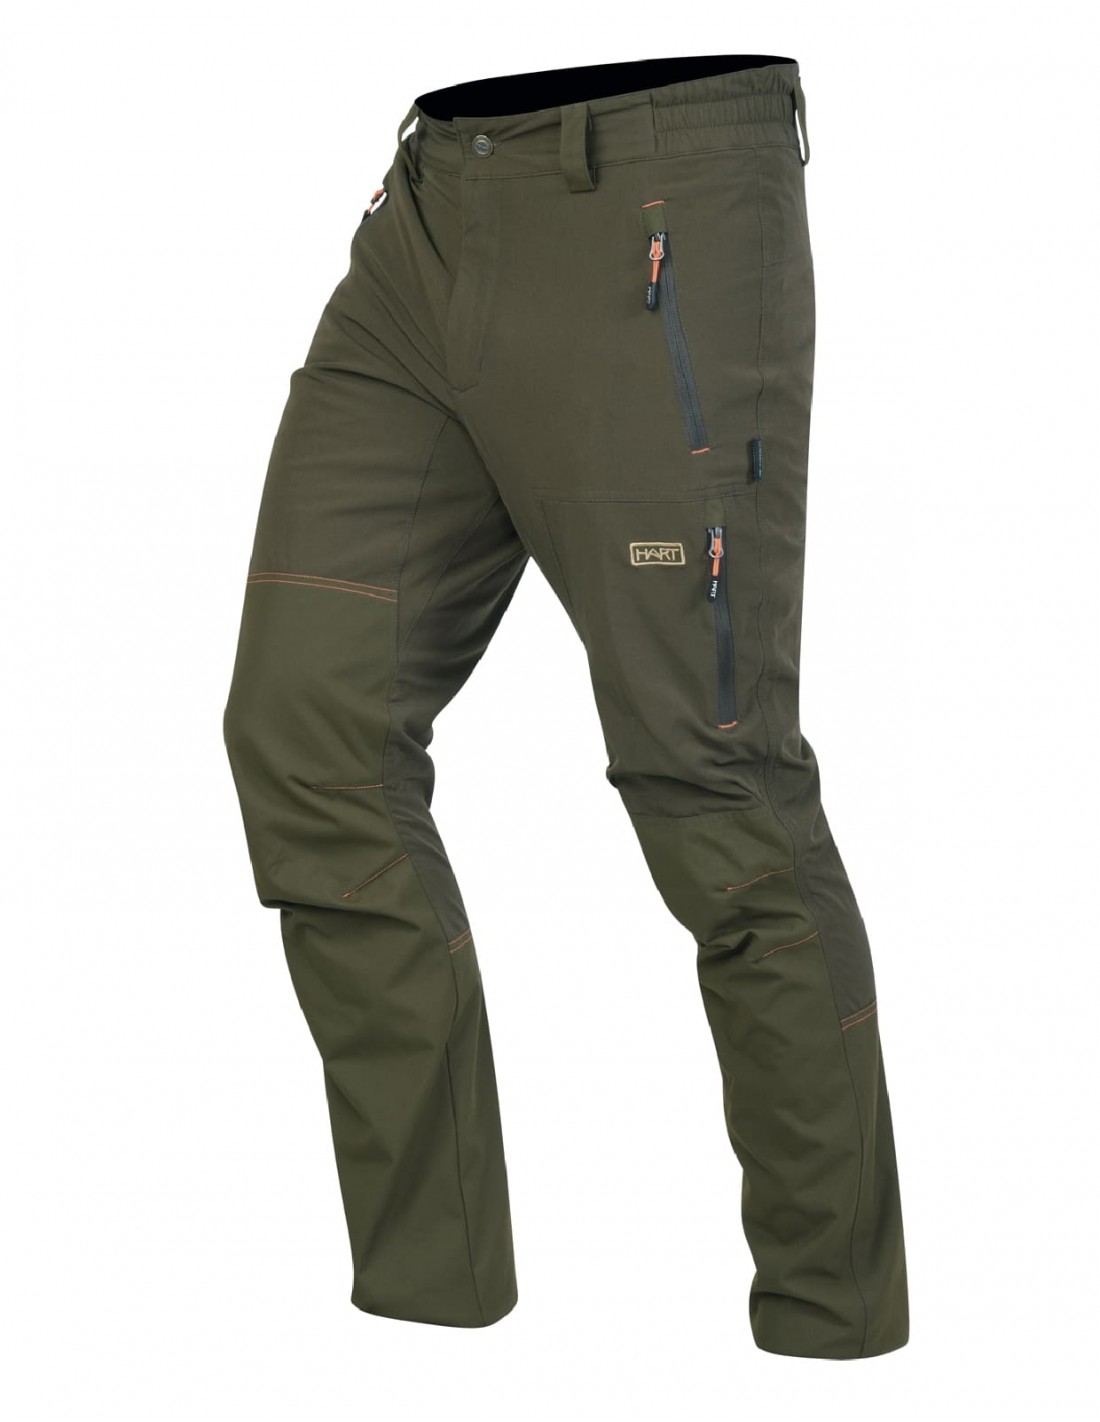 Pantalones de caza y de tiempo libre Impermeable ligero y elástico.